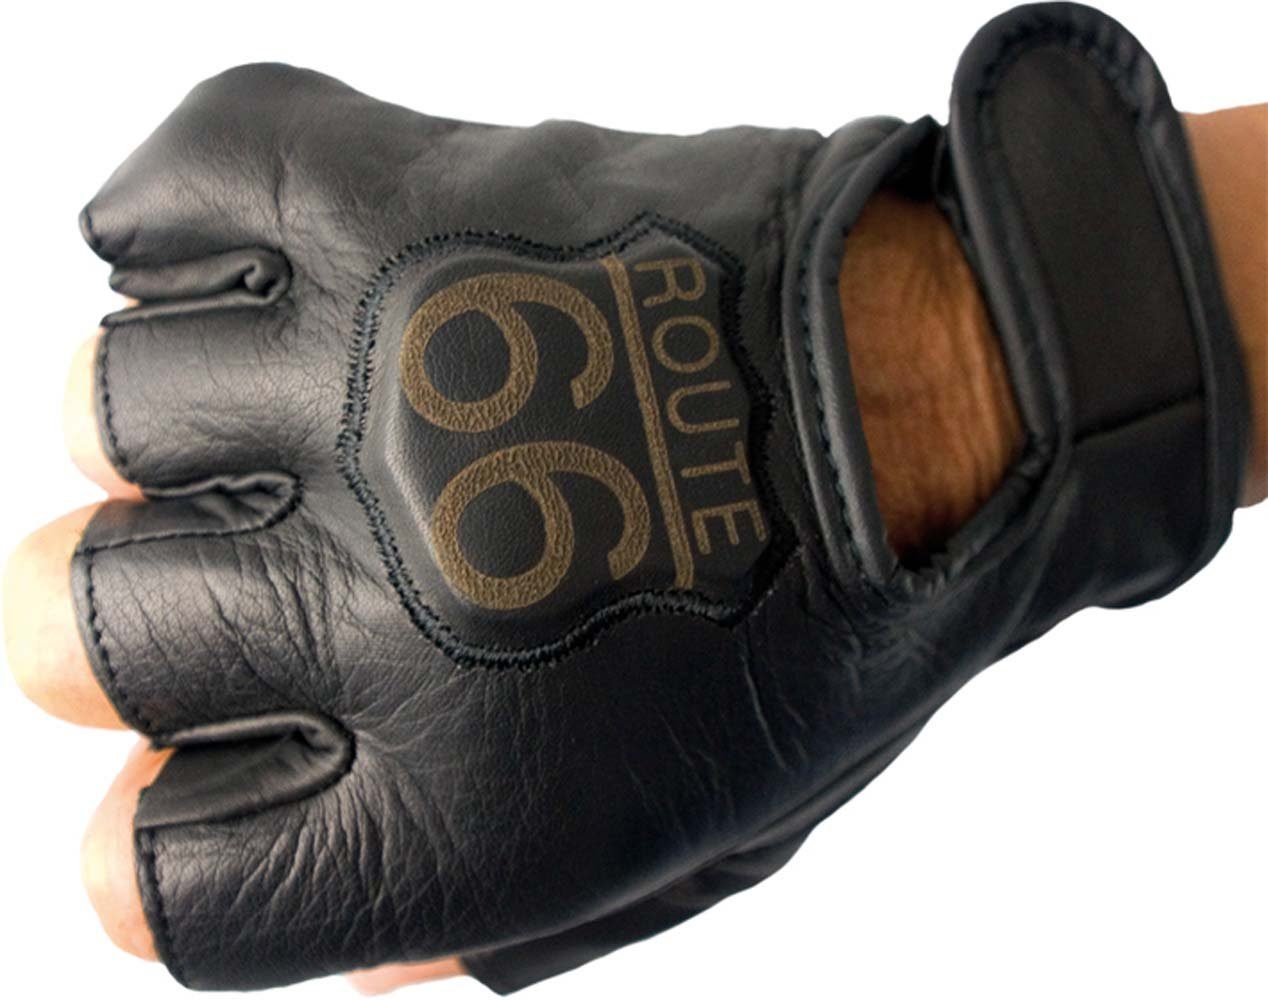 NEU 1 Paar Handschuhe Gloves Fingerhandschuhe uni schwarz Gr L/XL 